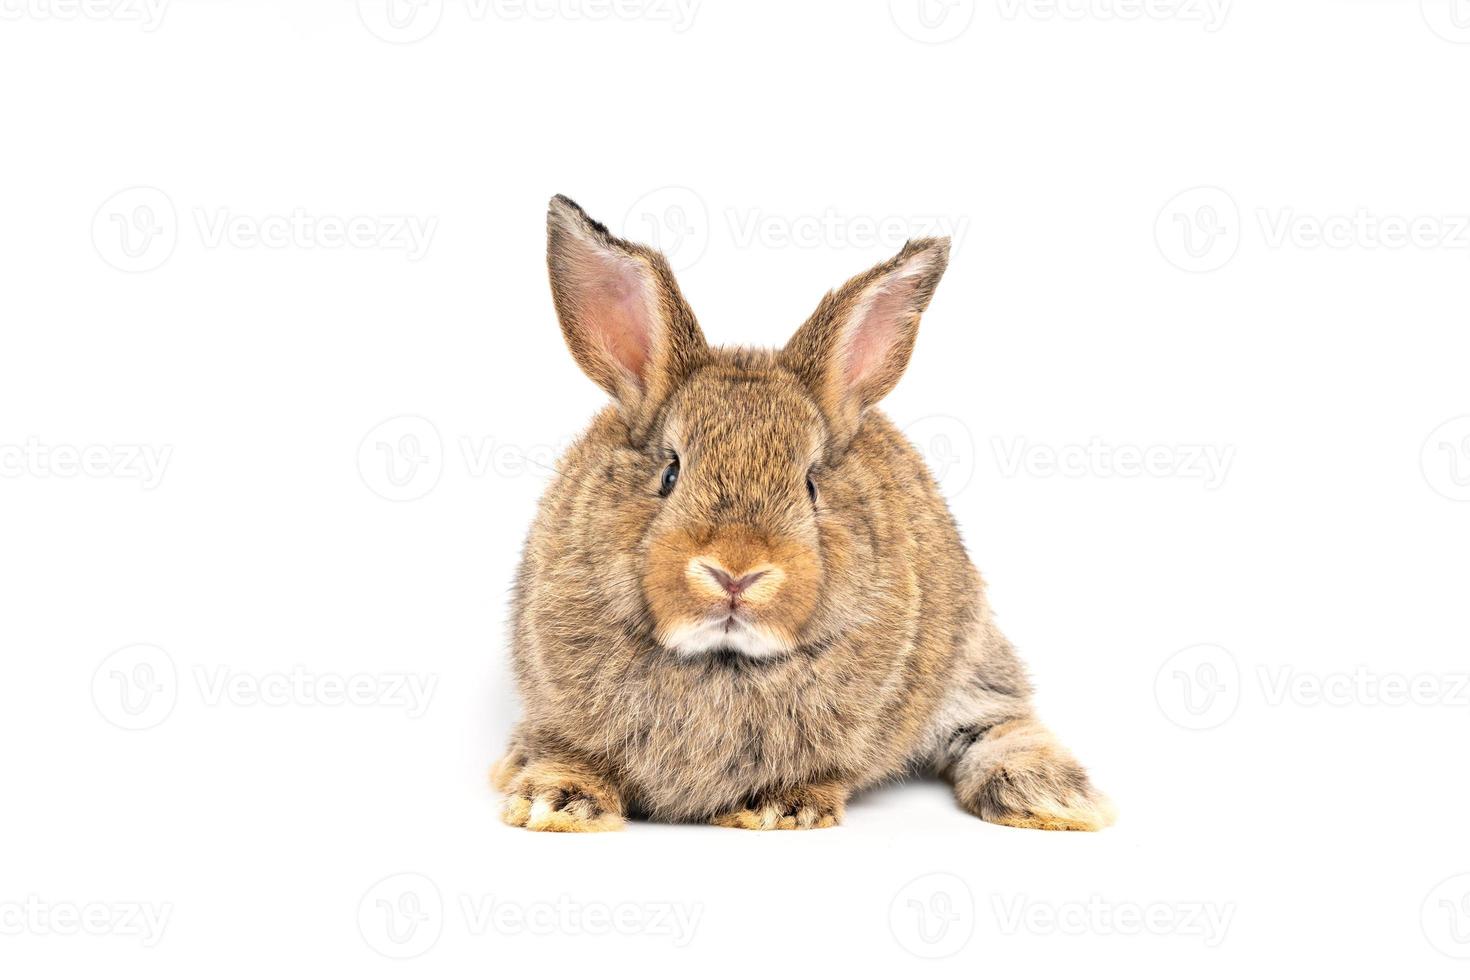 orelhas eretas de coelho marrom vermelho peludo e fofo estão sentadas olhando para a câmera, isoladas no fundo branco. conceito de animal de estimação roedor e páscoa. foto